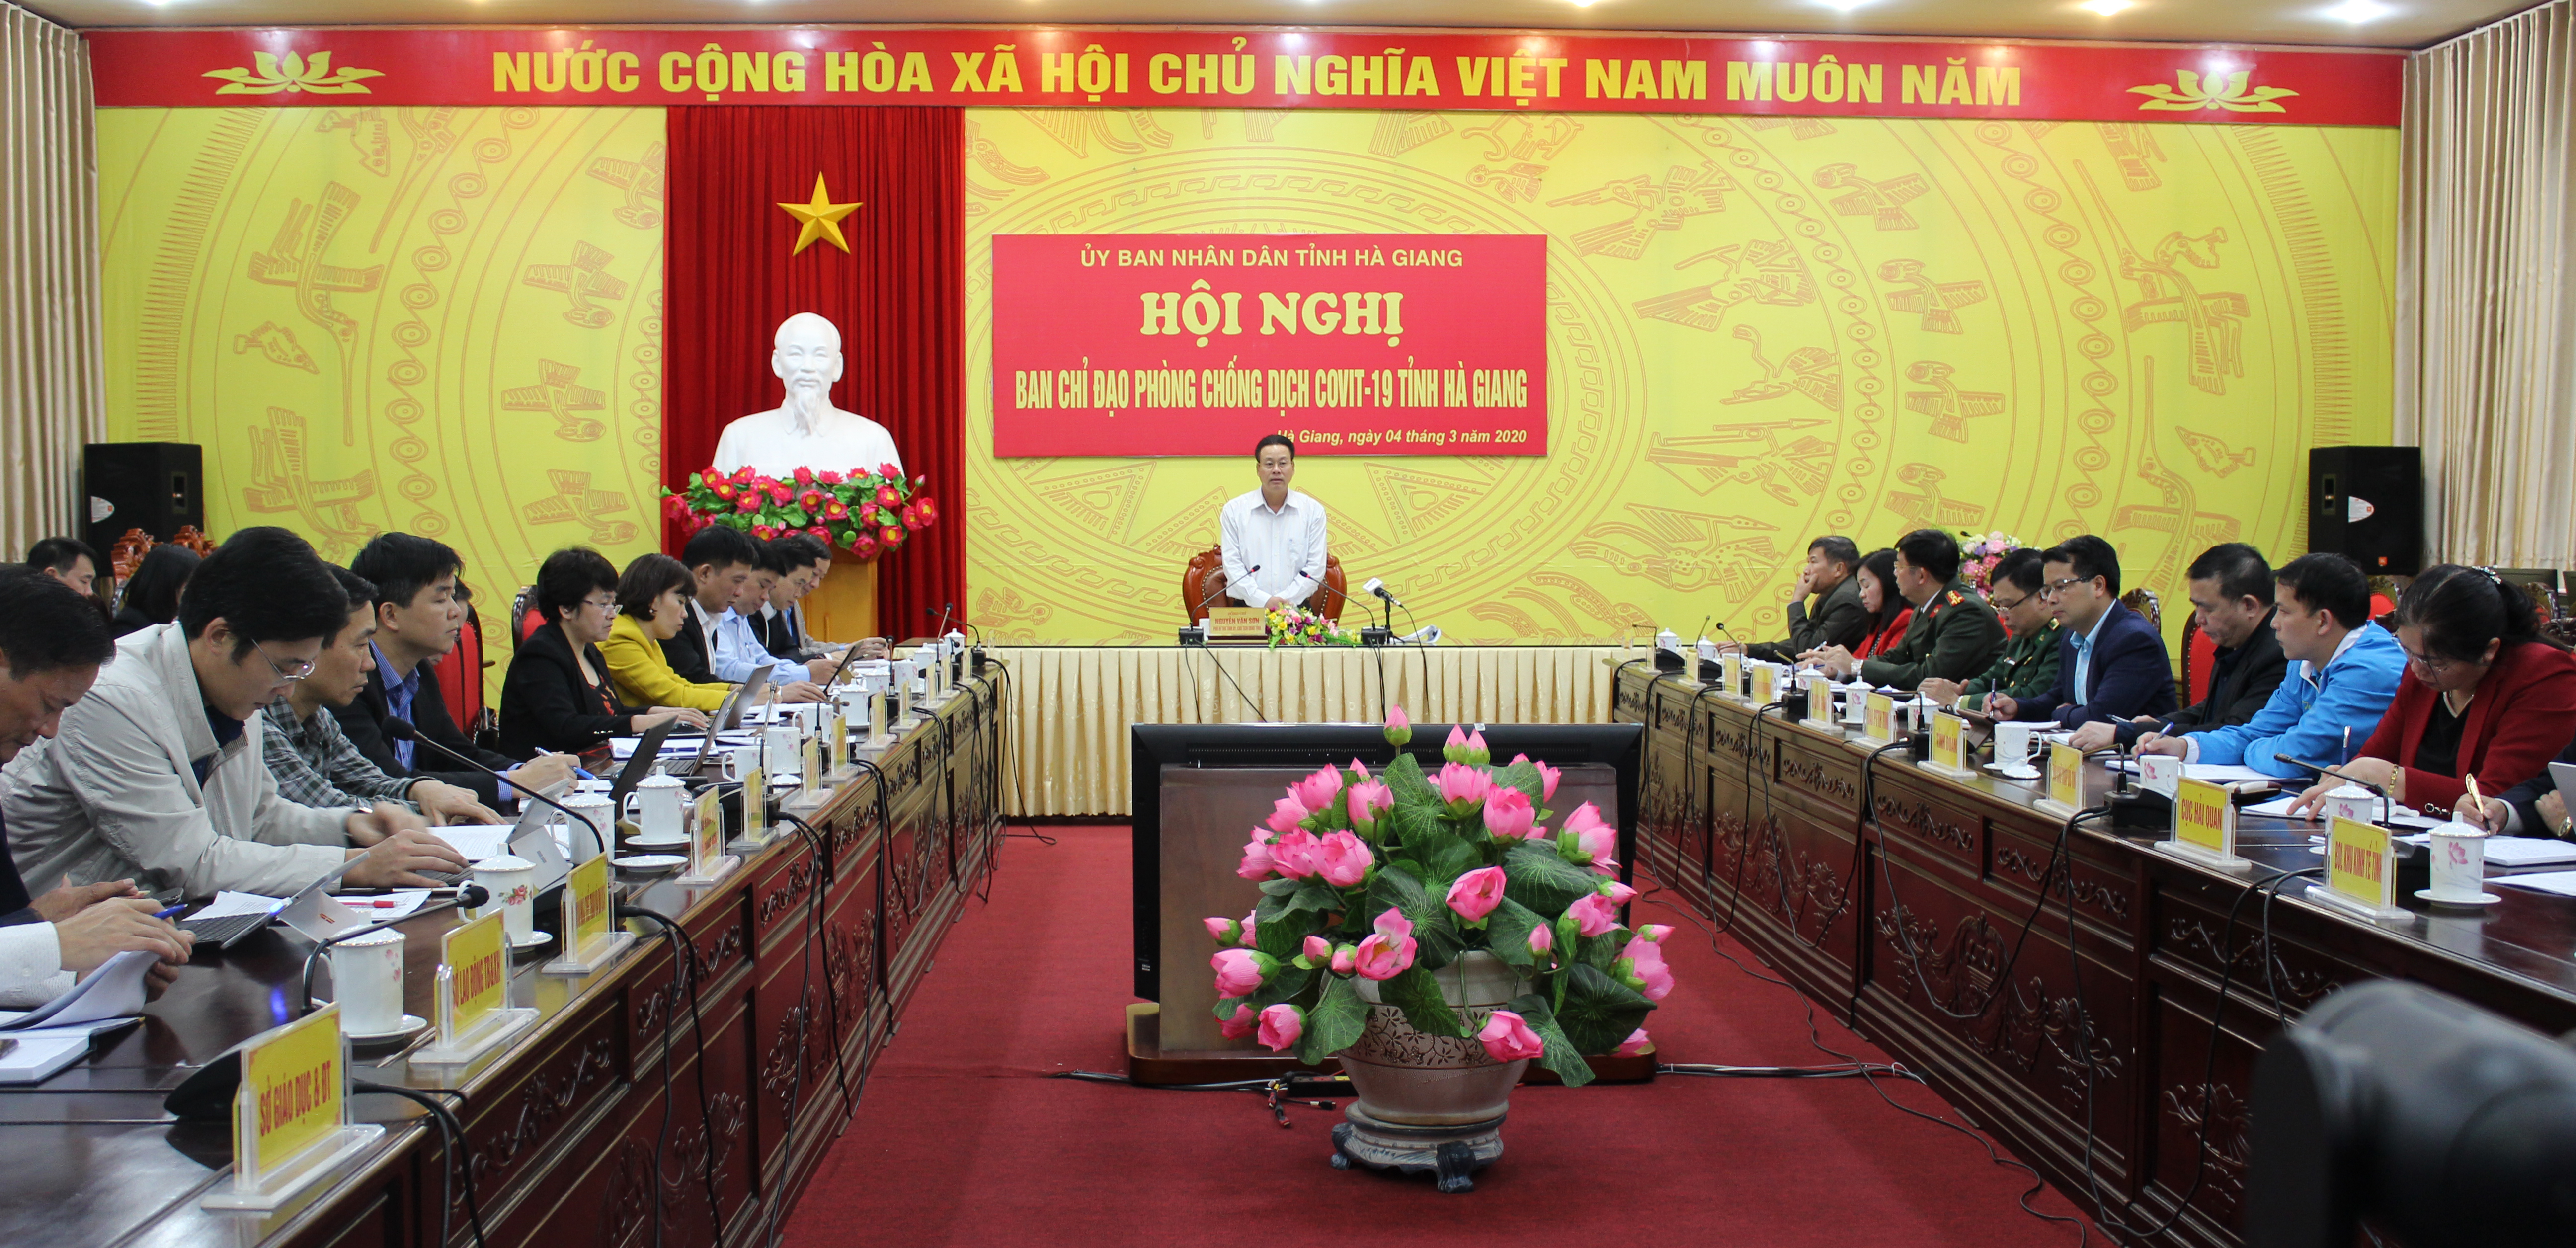 Đồng chí Nguyễn Văn Sơn, Chủ tịch UBND tỉnh, Trưởng ban Chỉ đạo dự và chủ trì Hội nghị